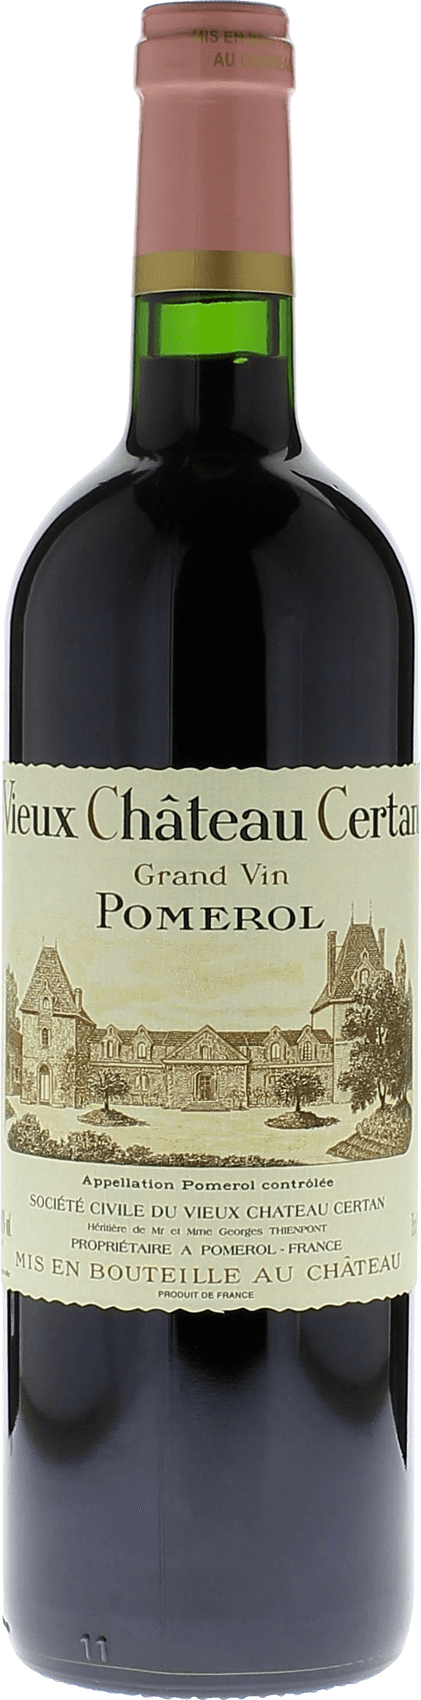 Vieux chteau  certan 2016  Pomerol, Bordeaux rouge